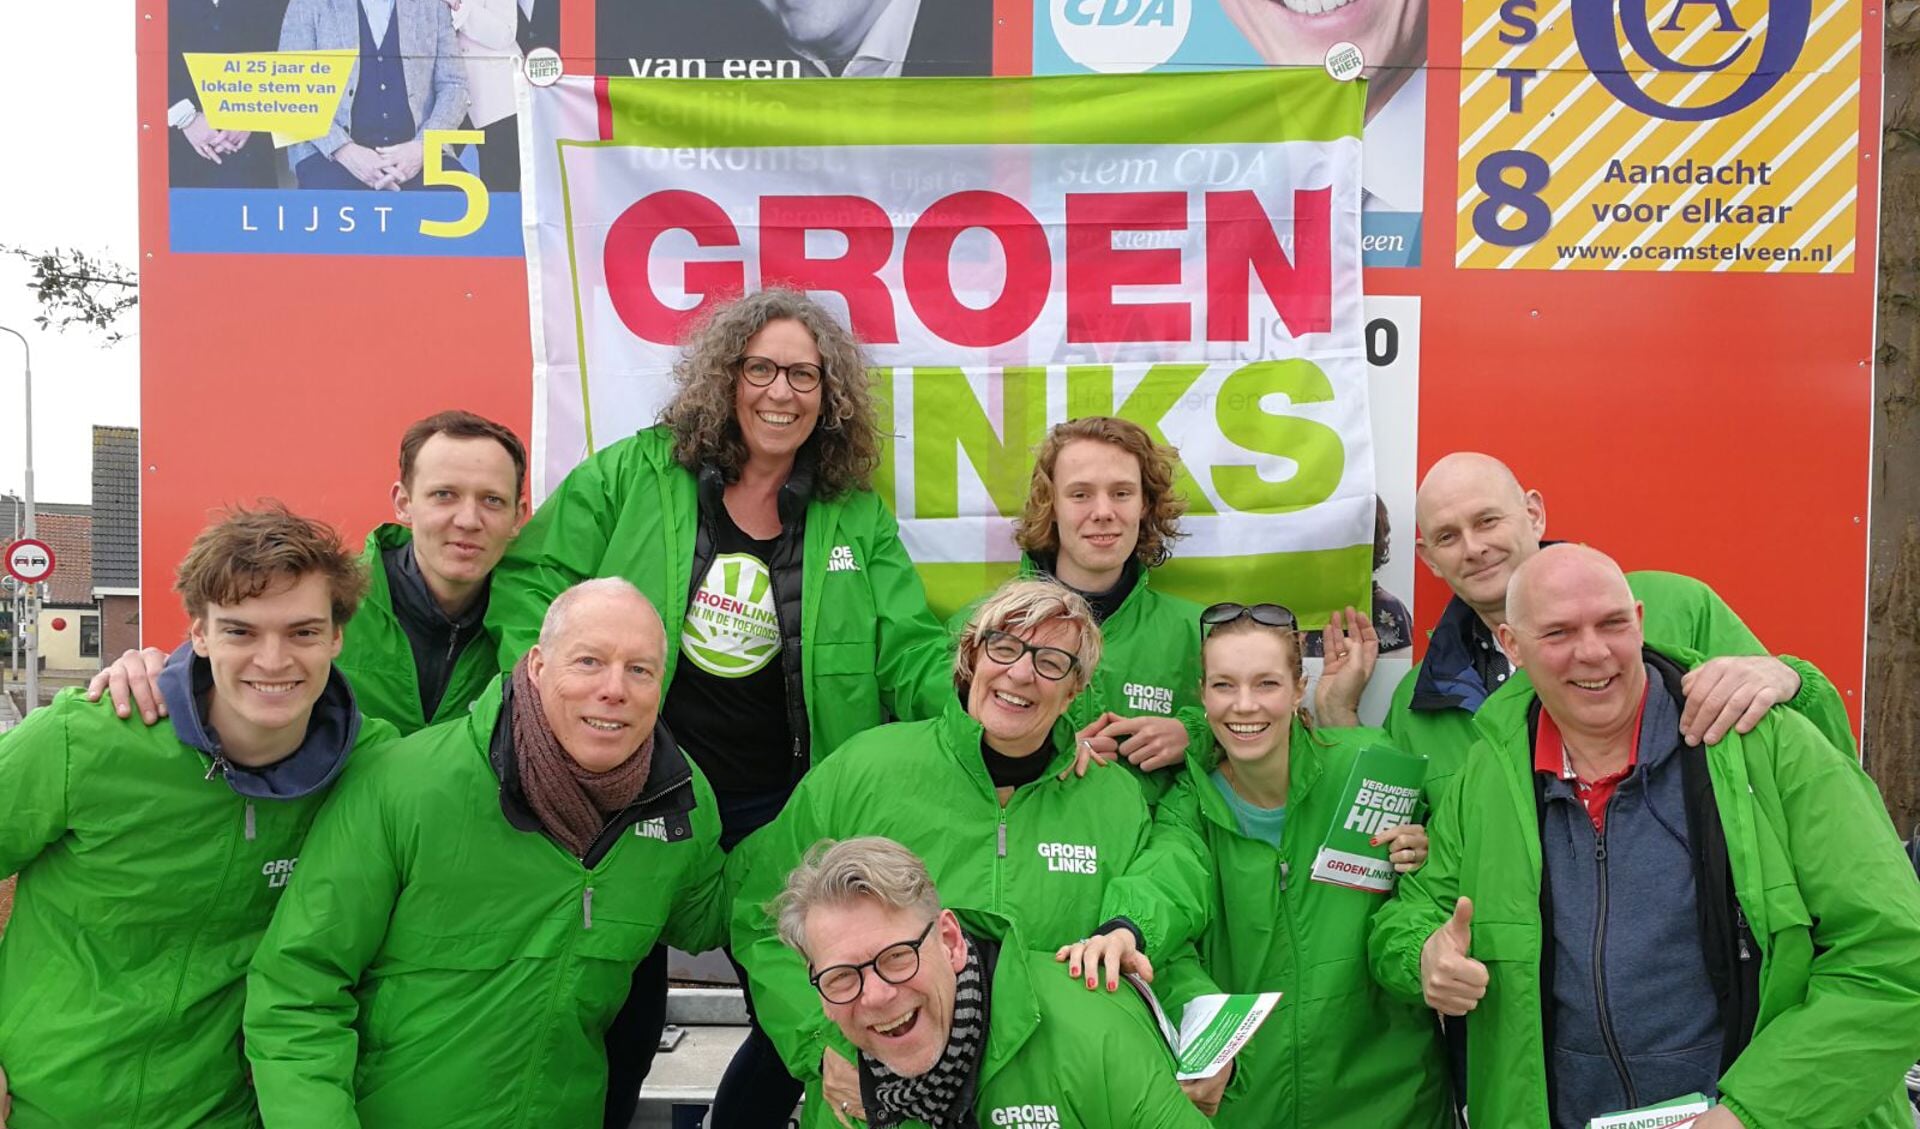 De kandidaten van GroenLinks Amstelveen en vrijwilligers bezochten zaterdag Nes a/d Amstel